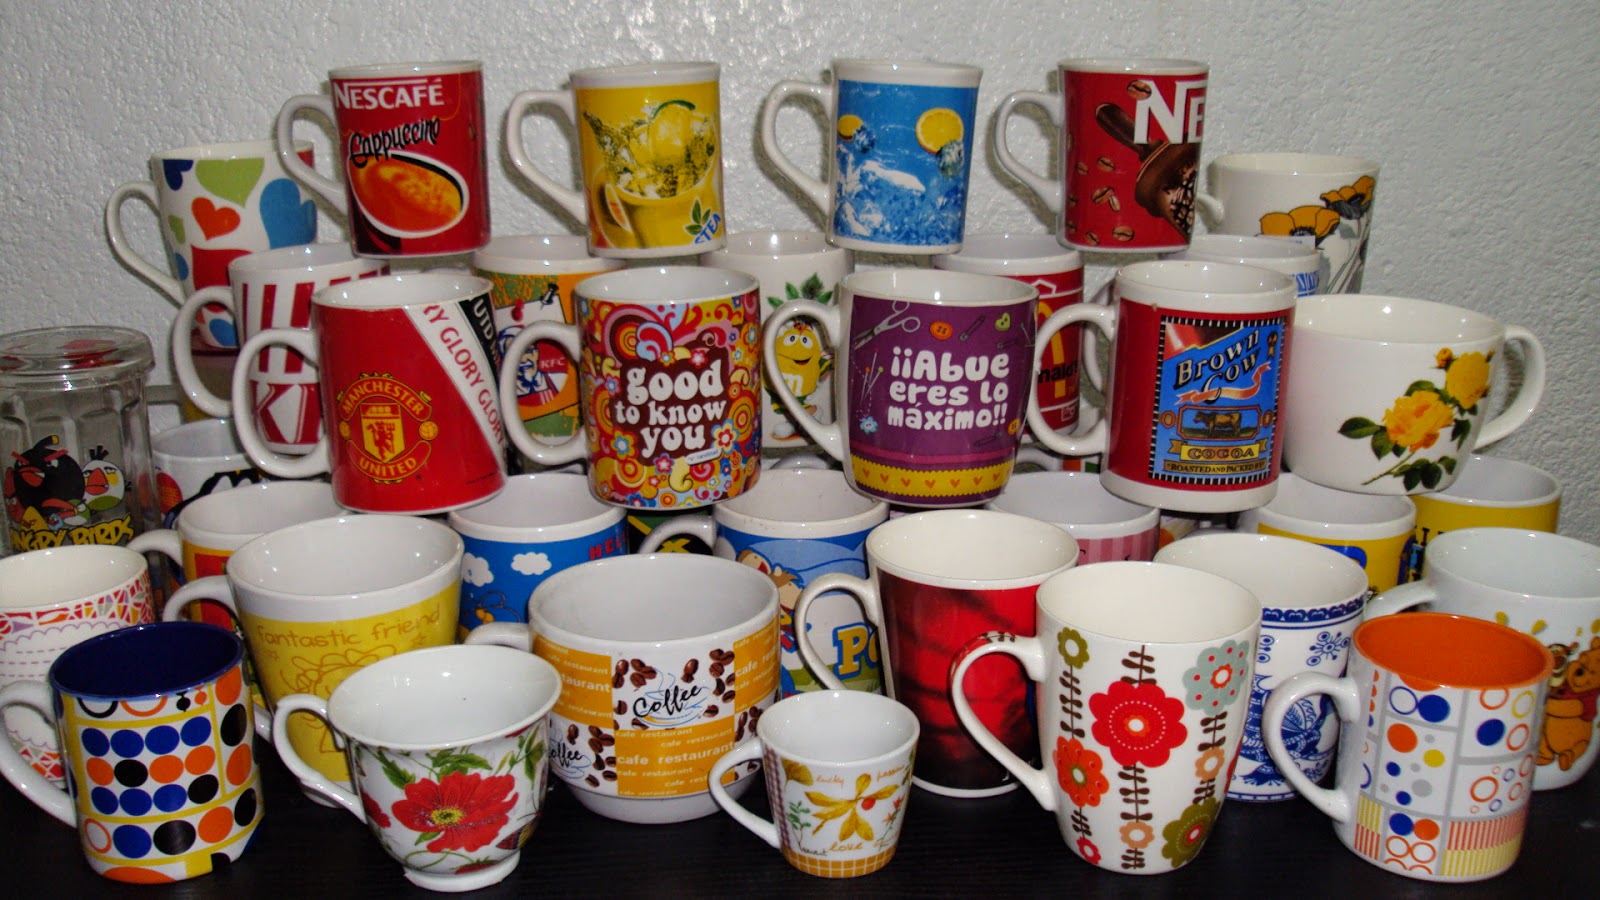 Ceramic Coalition Tea Mug